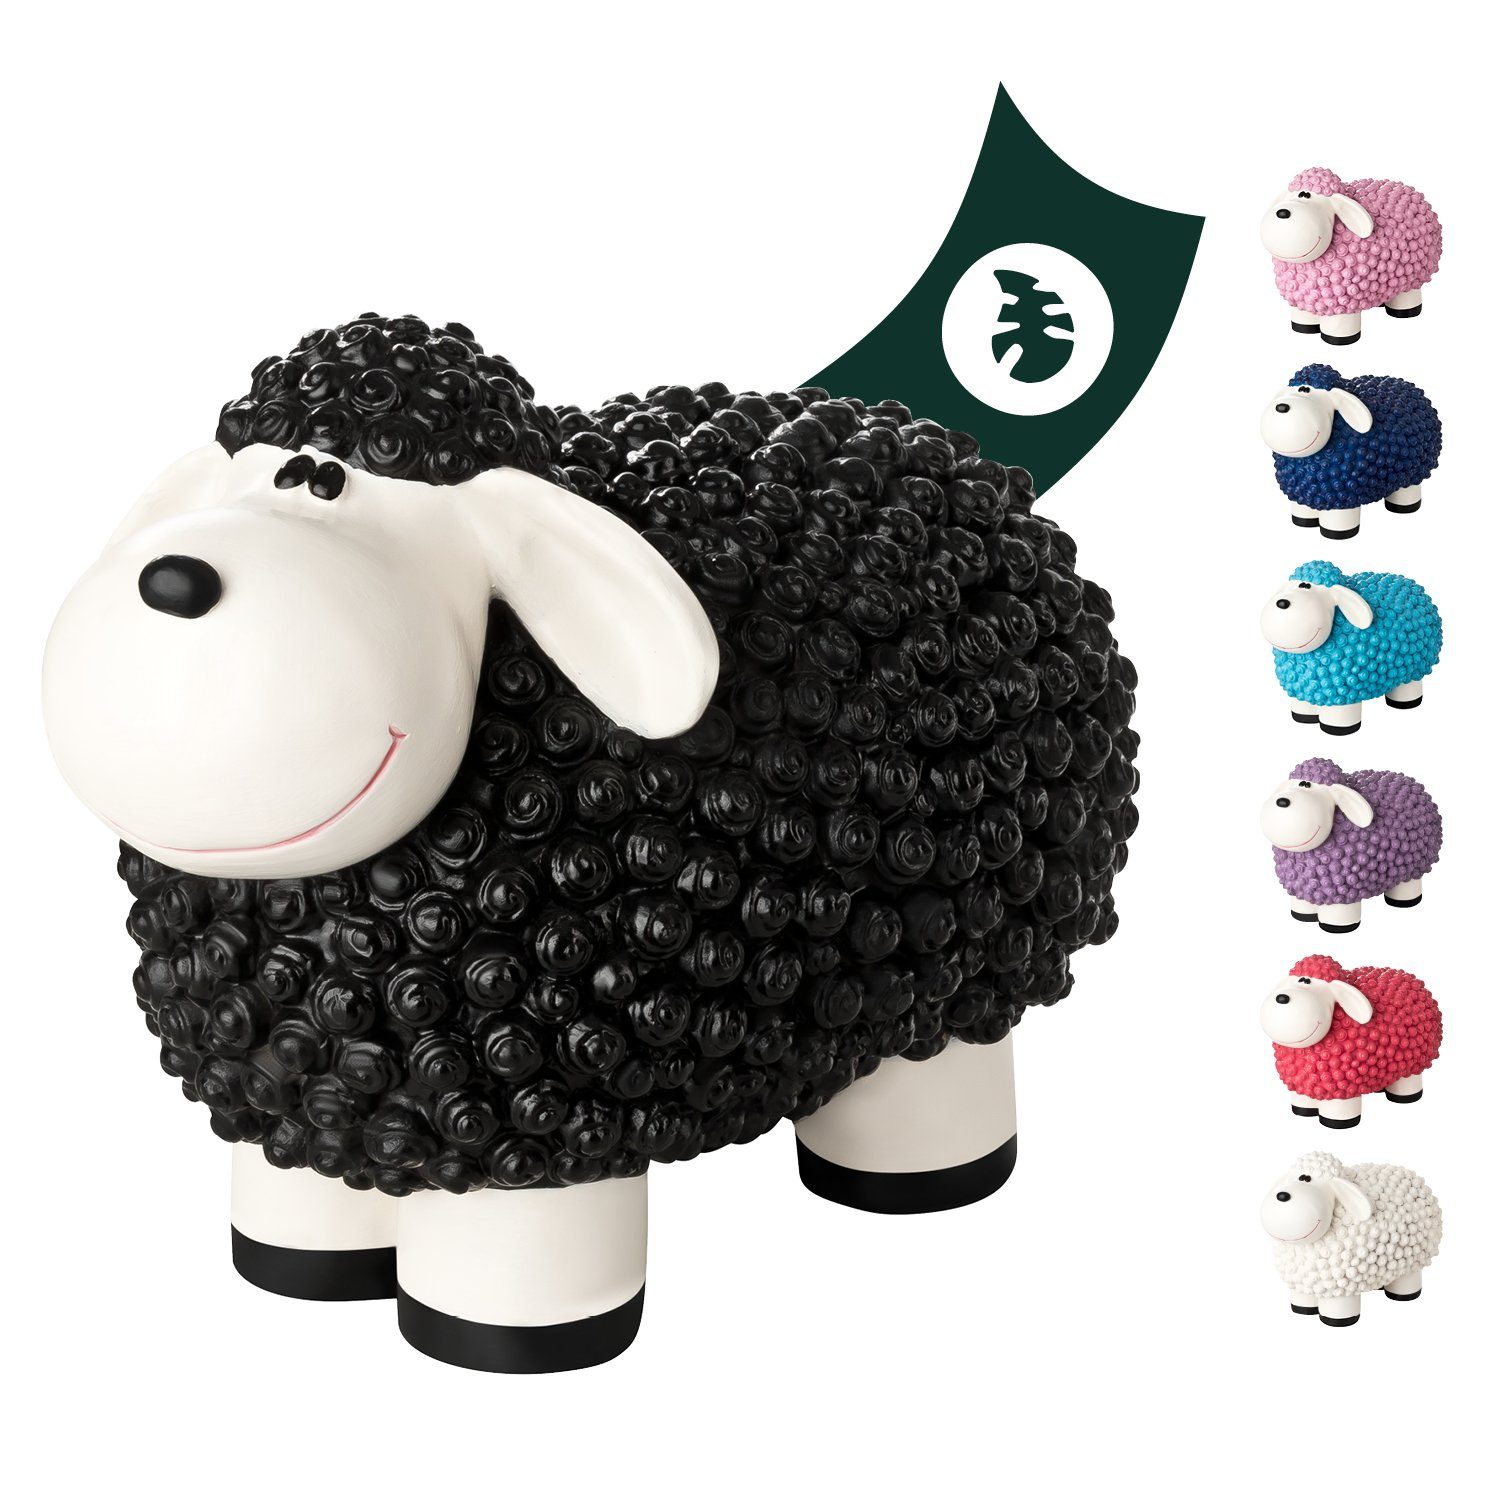 VERDOBA Gartenfigur Gartendeko Mini Schaf - Wetterfeste Gartenfigur - Deko Schaf für Außen, Polyresin Schwarz